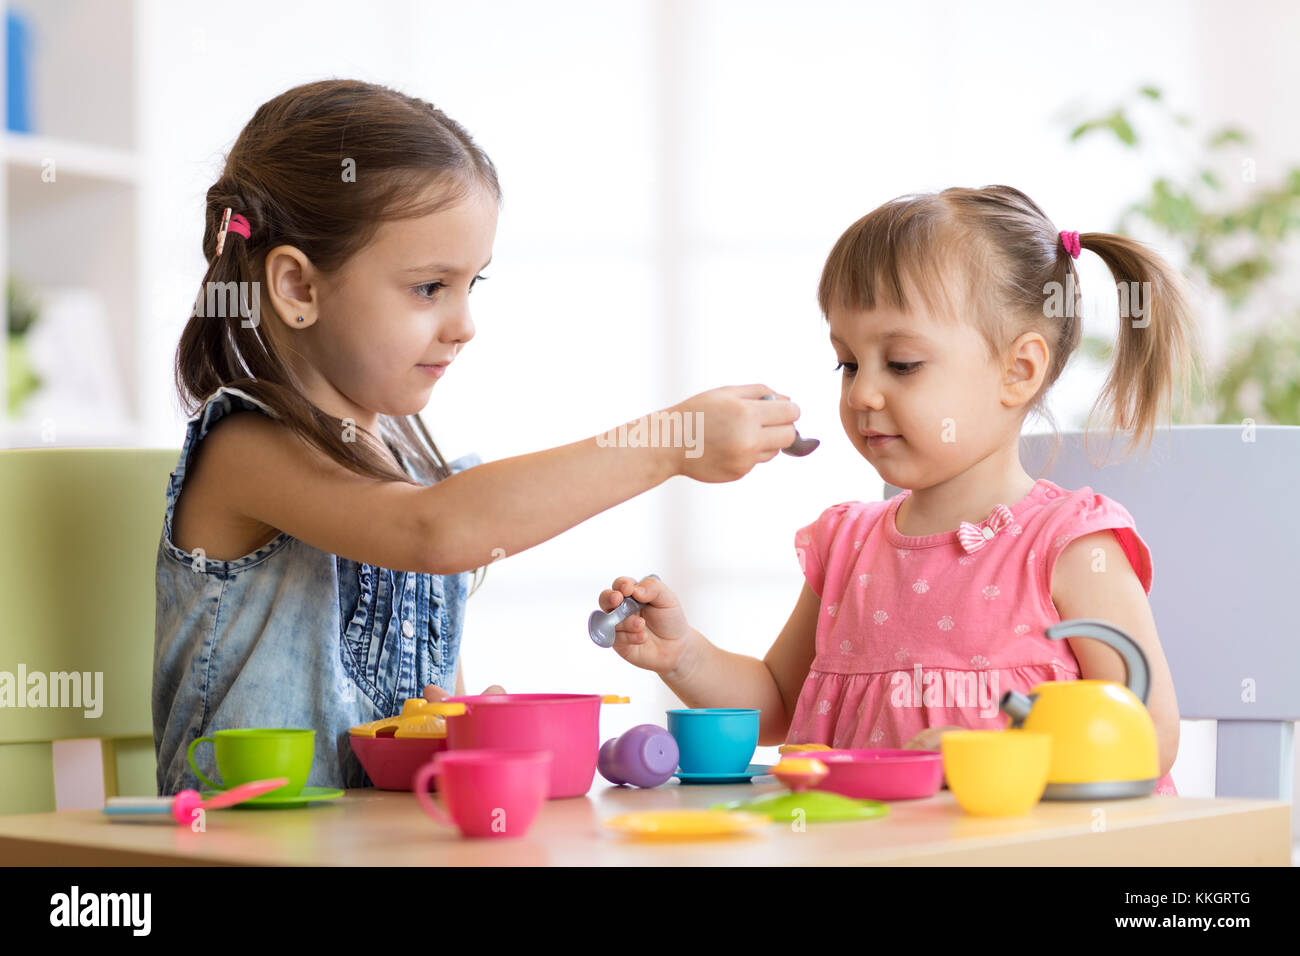 Les enfants jouent avec de la vaisselle en plastique Banque D'Images